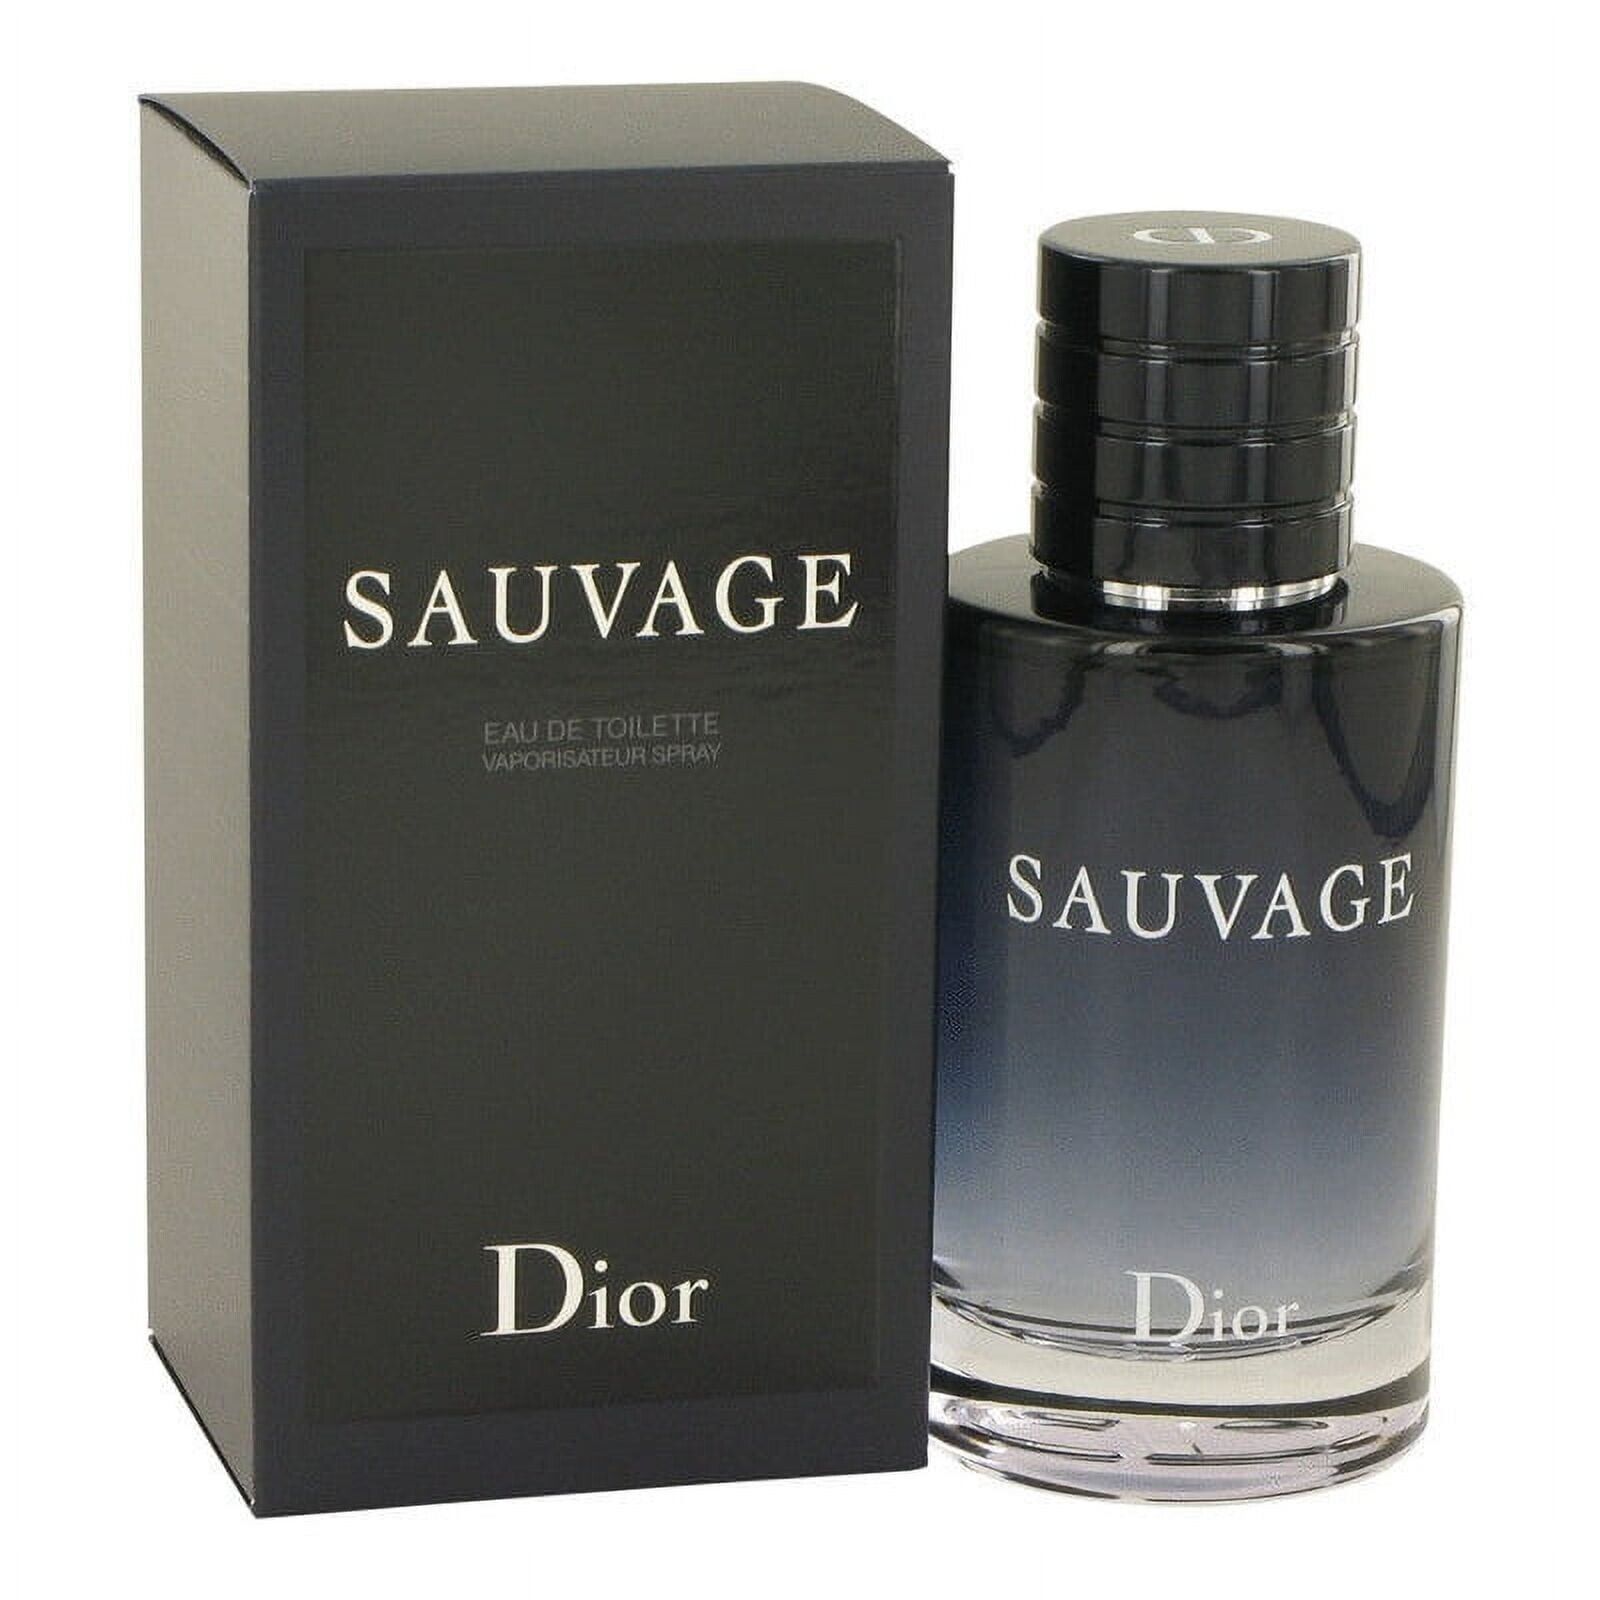 Dior Sauvage Eau de Toilette Spray for Men - 100ml